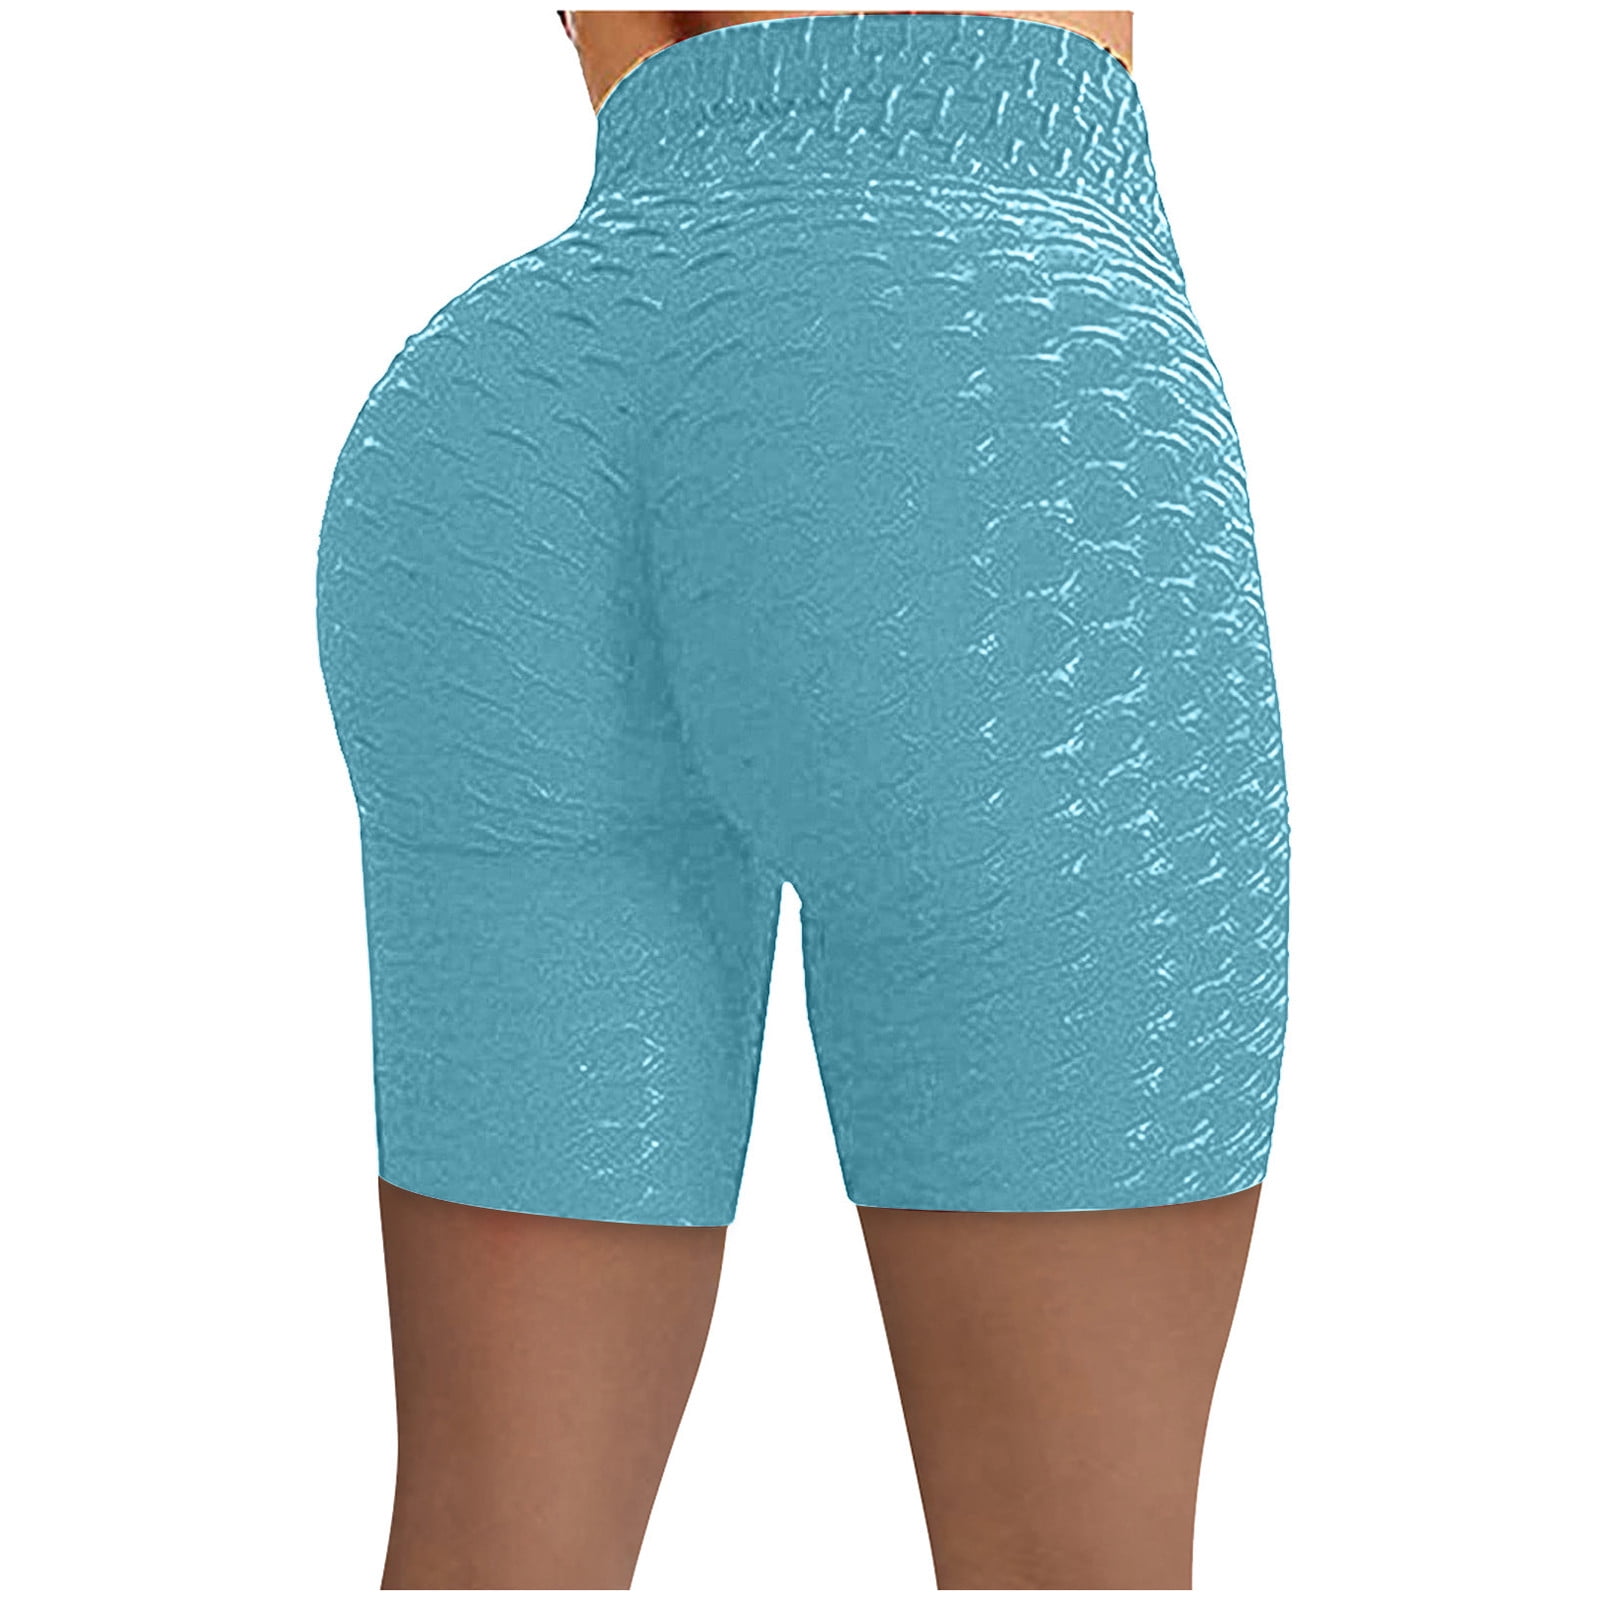 Scrunch Butt Lifting Shorts for Women Workout Gym Seamless Leggings ...